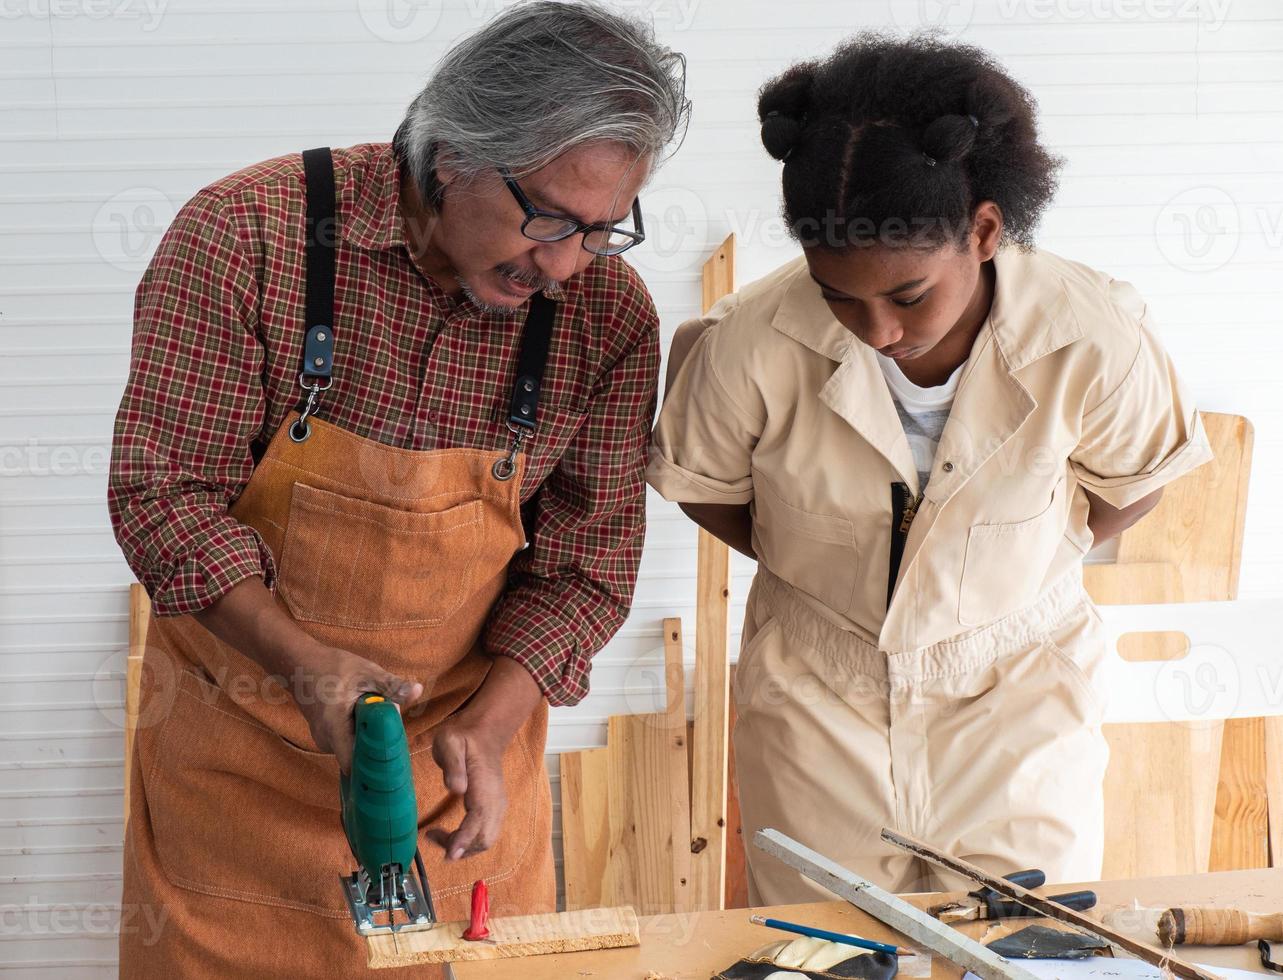 las adolescentes aprenden a usar una sierra electrónica y juegan con su abuelo en el taller de madera, un concepto para mejorar el desarrollo y el pensamiento de los niños. foto